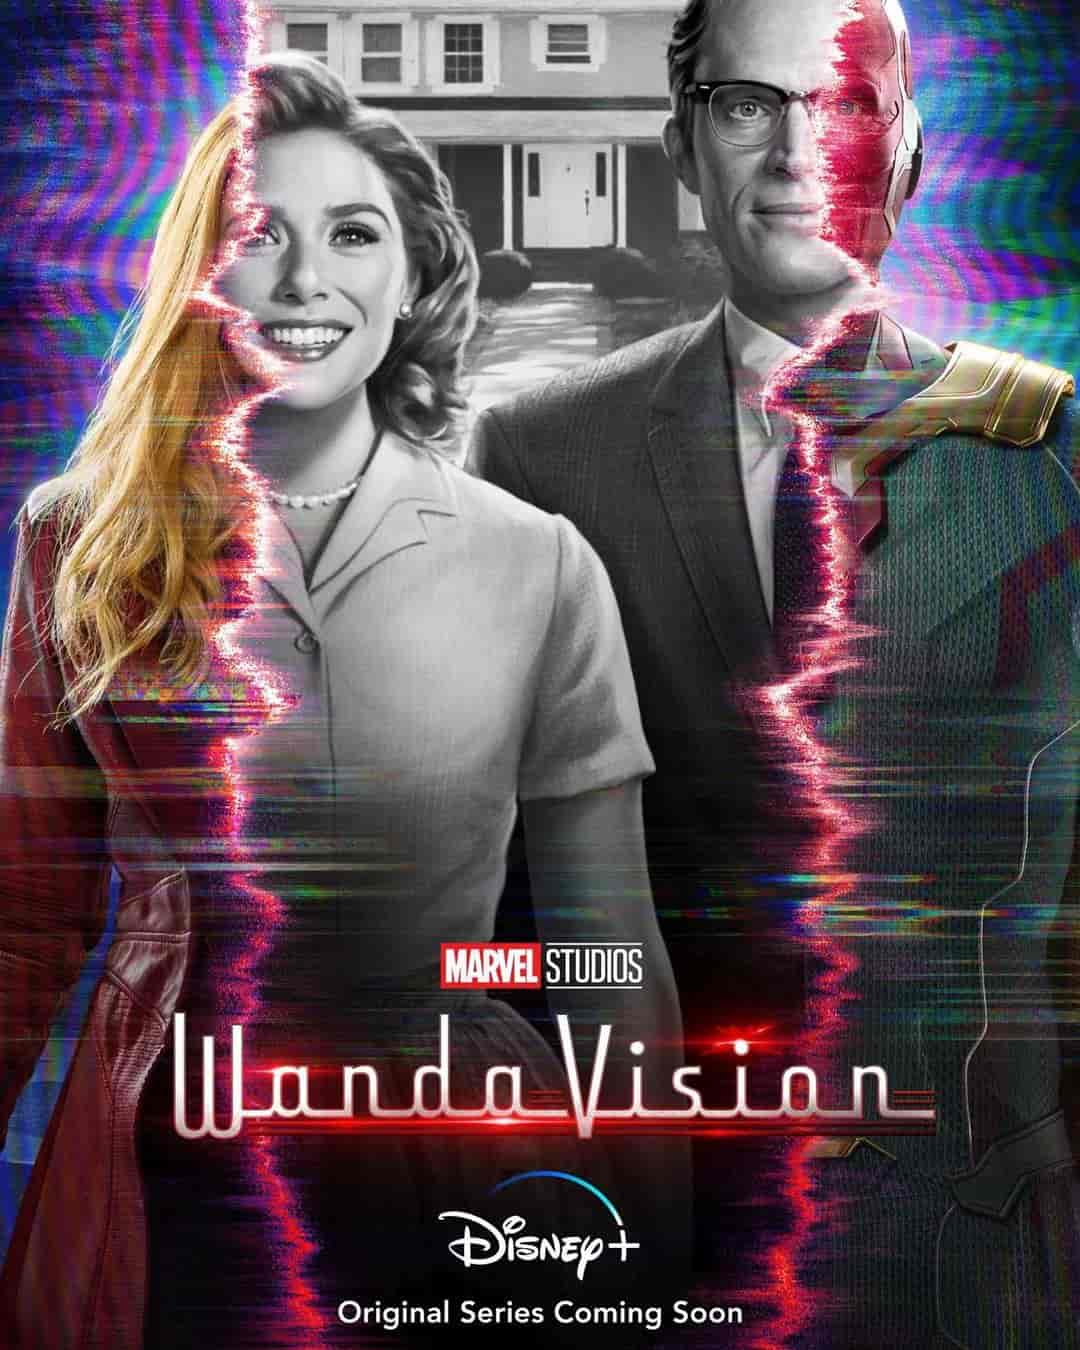 WandaVision, A Family Life of Two Superheroes Wanda Maximoff and Vision